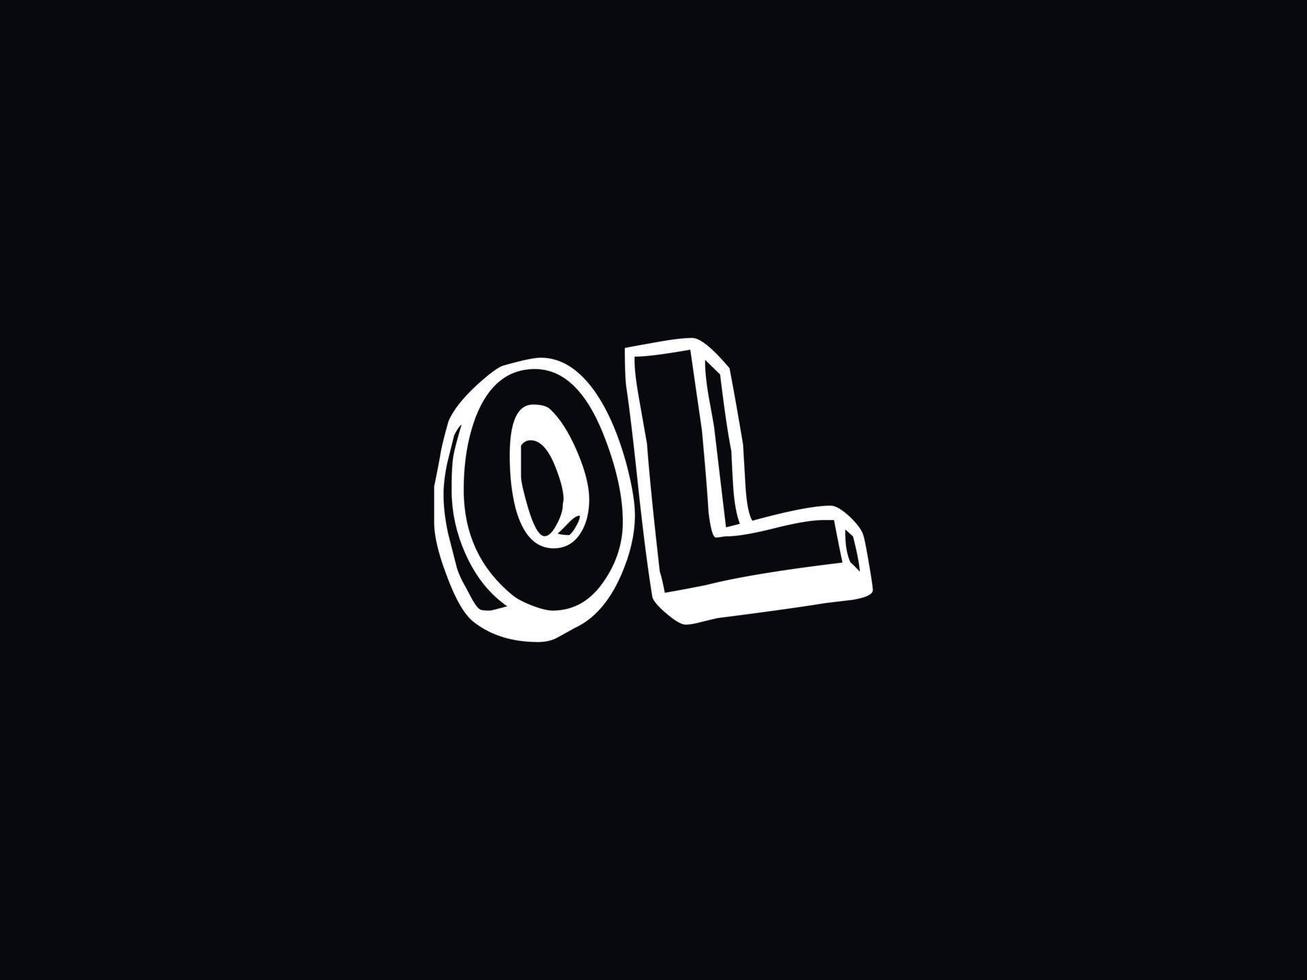 Alphabet Ol Logo Image, Letter OL Initial Logo Template vector